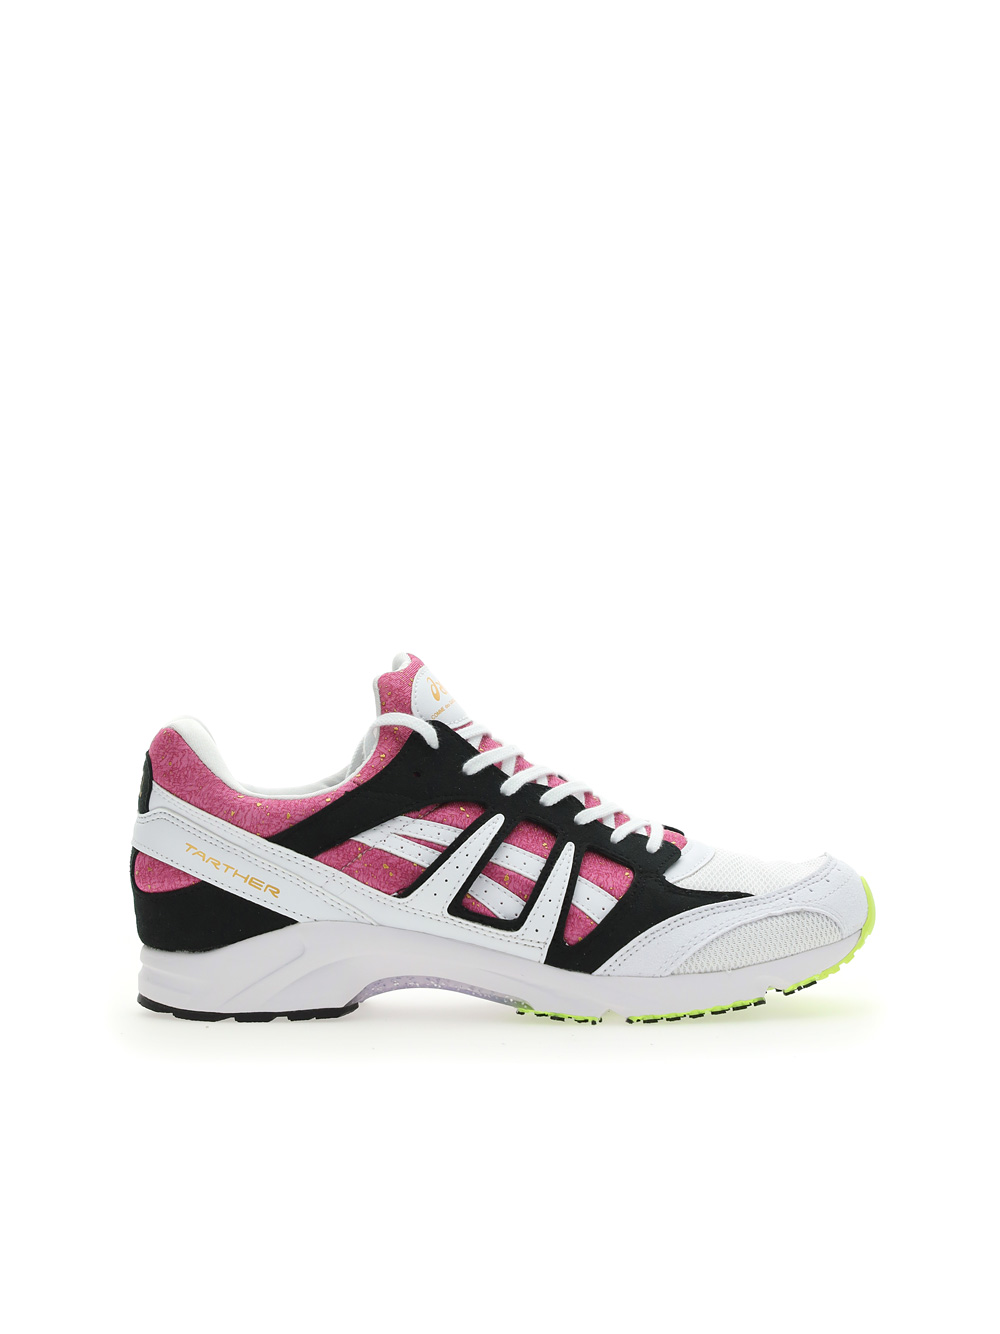 粉红色运动鞋 COMME DES GARCONS 粉红色男士运动鞋 FGK100_000_2_推荐淘宝好看的粉红色运动鞋